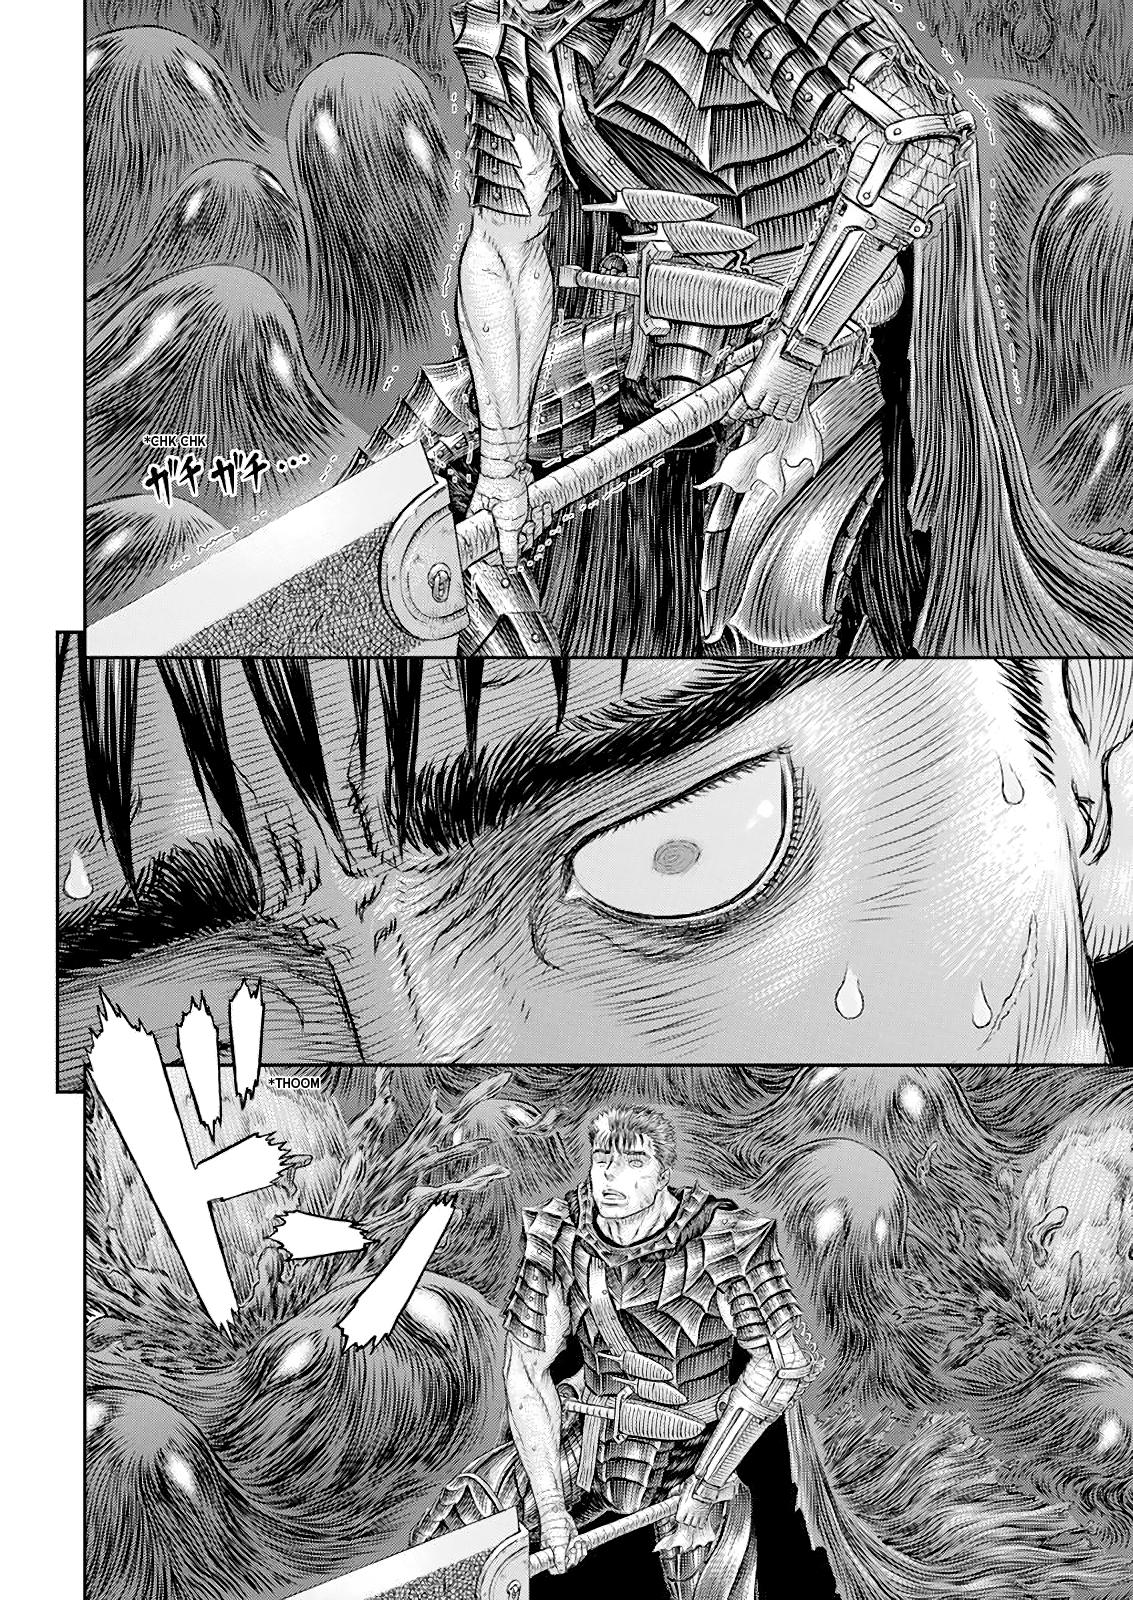 Berserk Manga Chapter 368 image 13